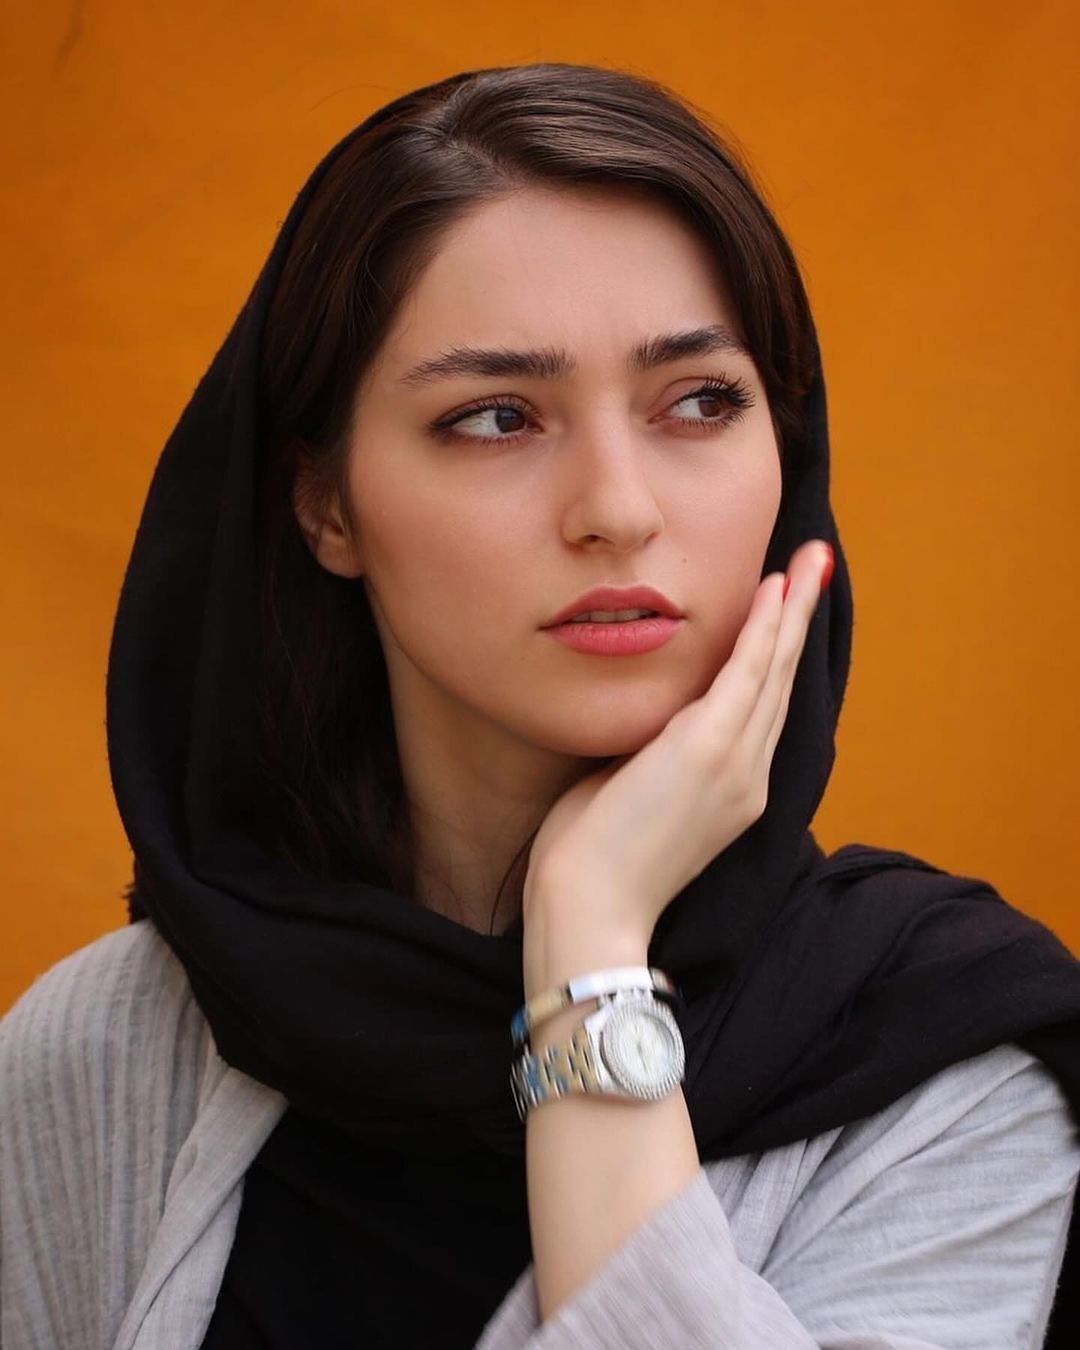 یک اصفهان از دست این شیدا خانم اسیر شده است